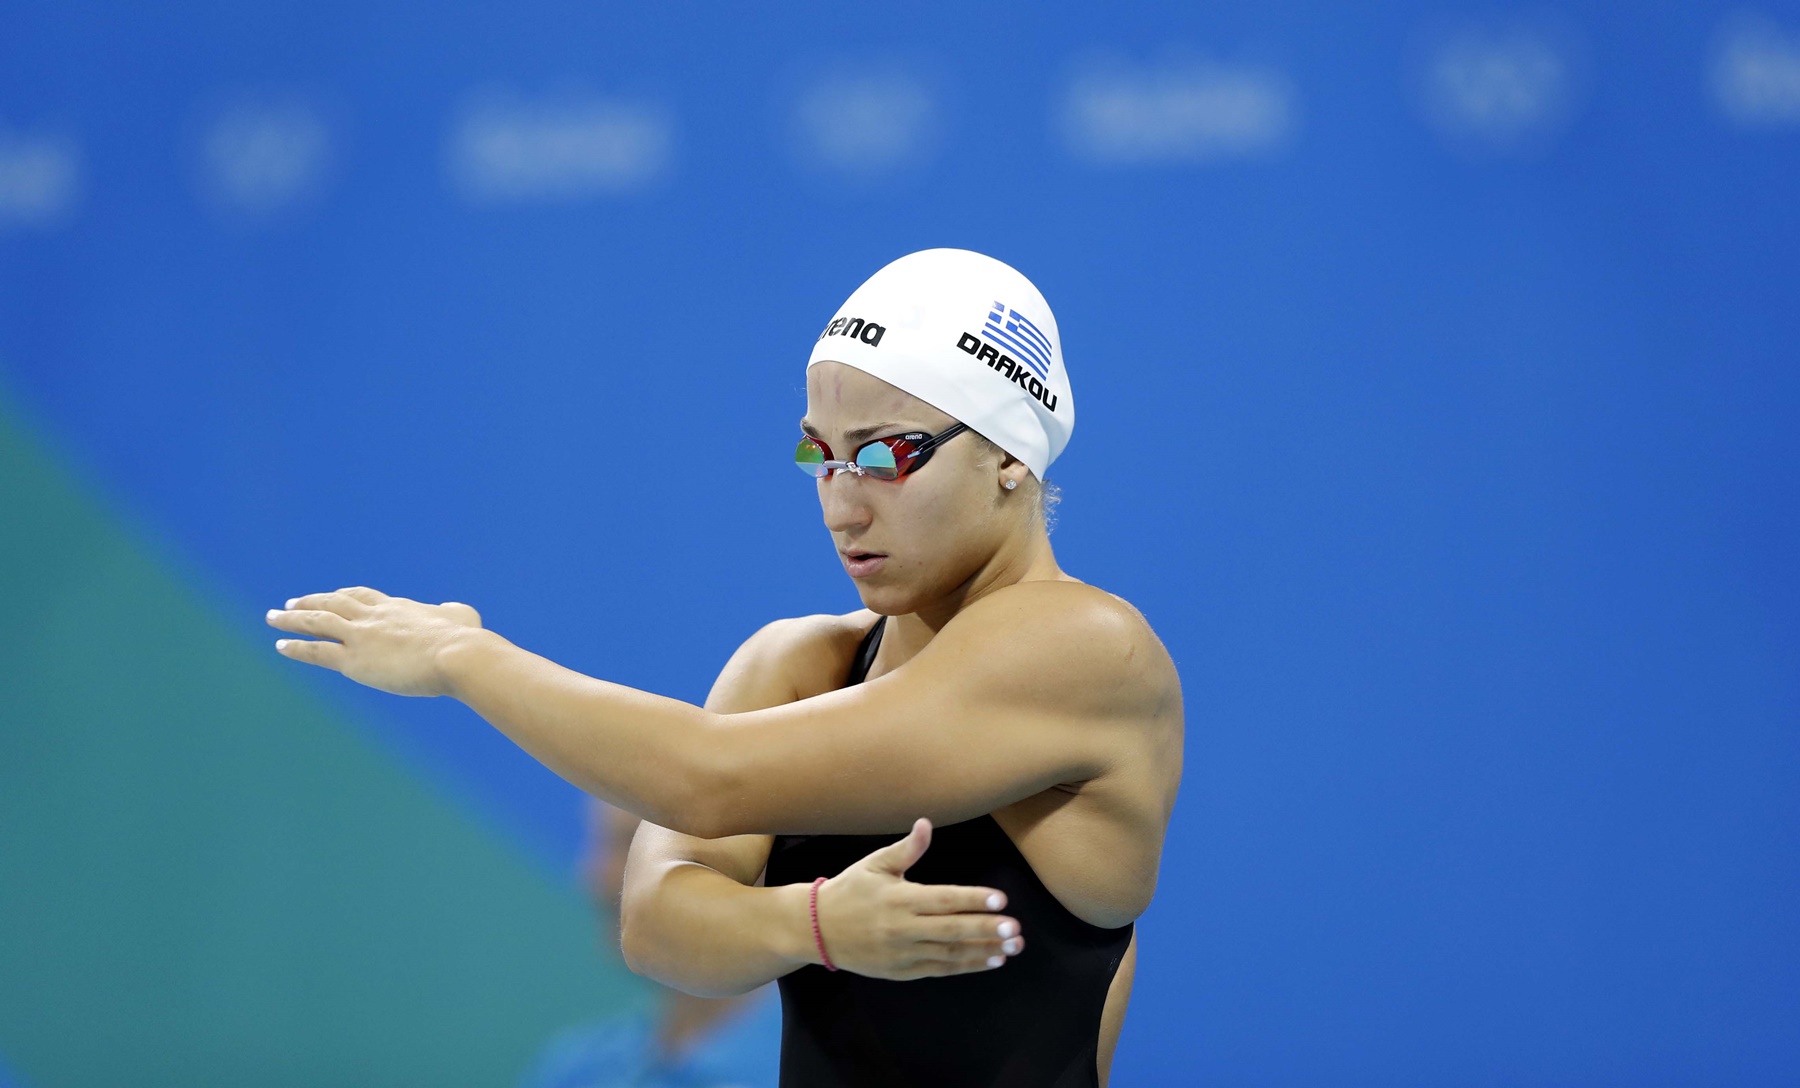 Ευρωπαϊκό πρωτάθλημα κολύμβησης – Ρώμη: Πρόκριση για την Δράκου